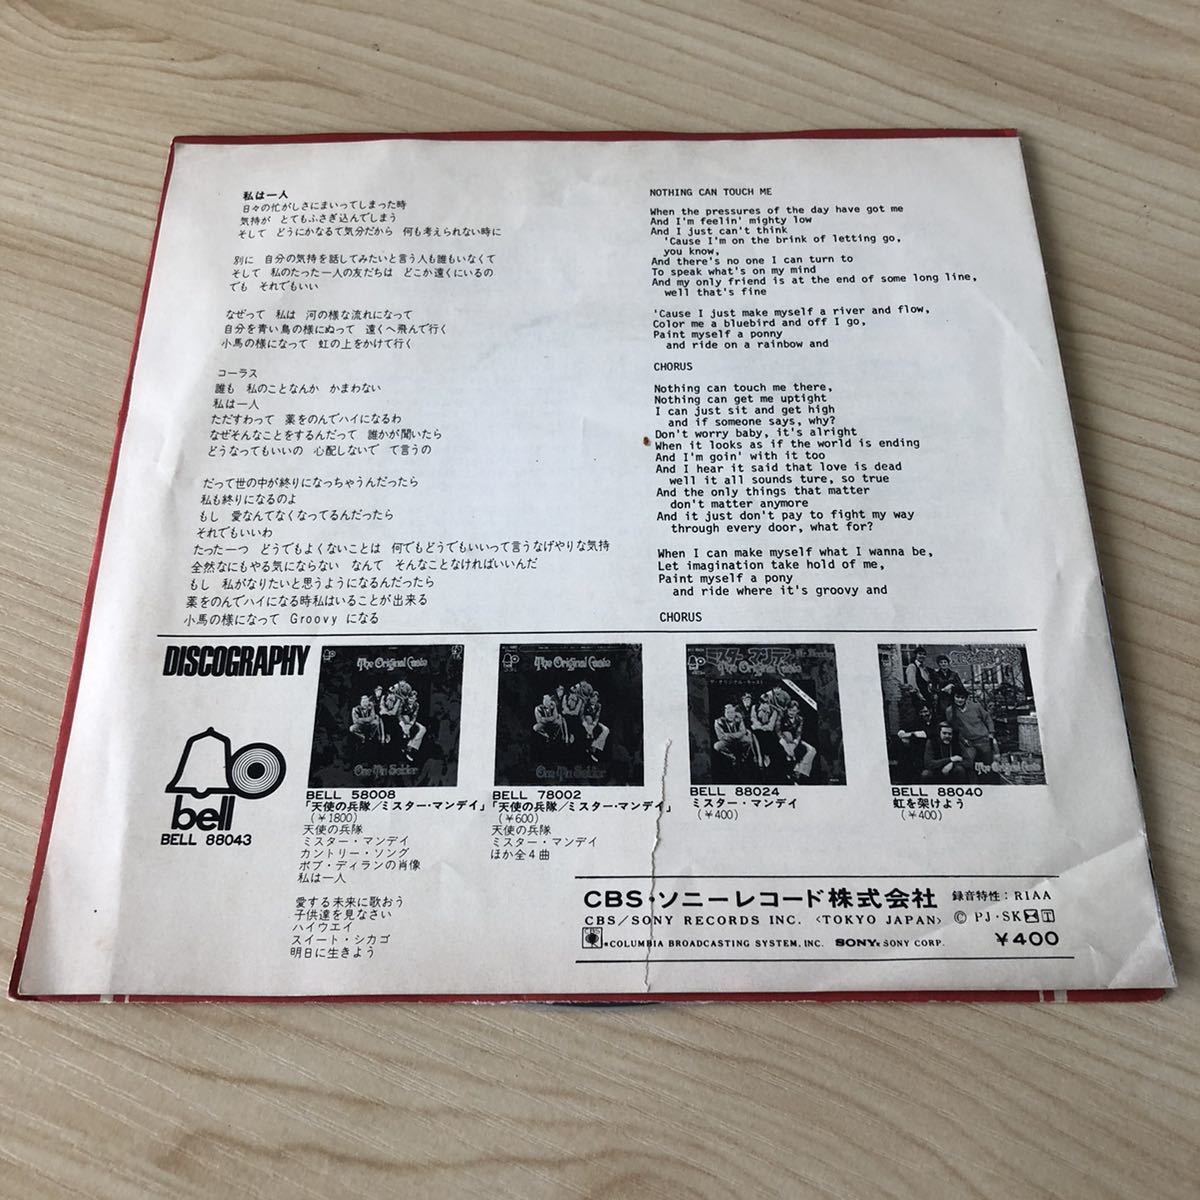 【国内盤7inch】ザオリジナルキャスト カムトゥギャザー 私は1人 THE ORIGINAL CAST COME TOGETHER / EP レコード / BELL-88043 / 洋楽 /_画像2